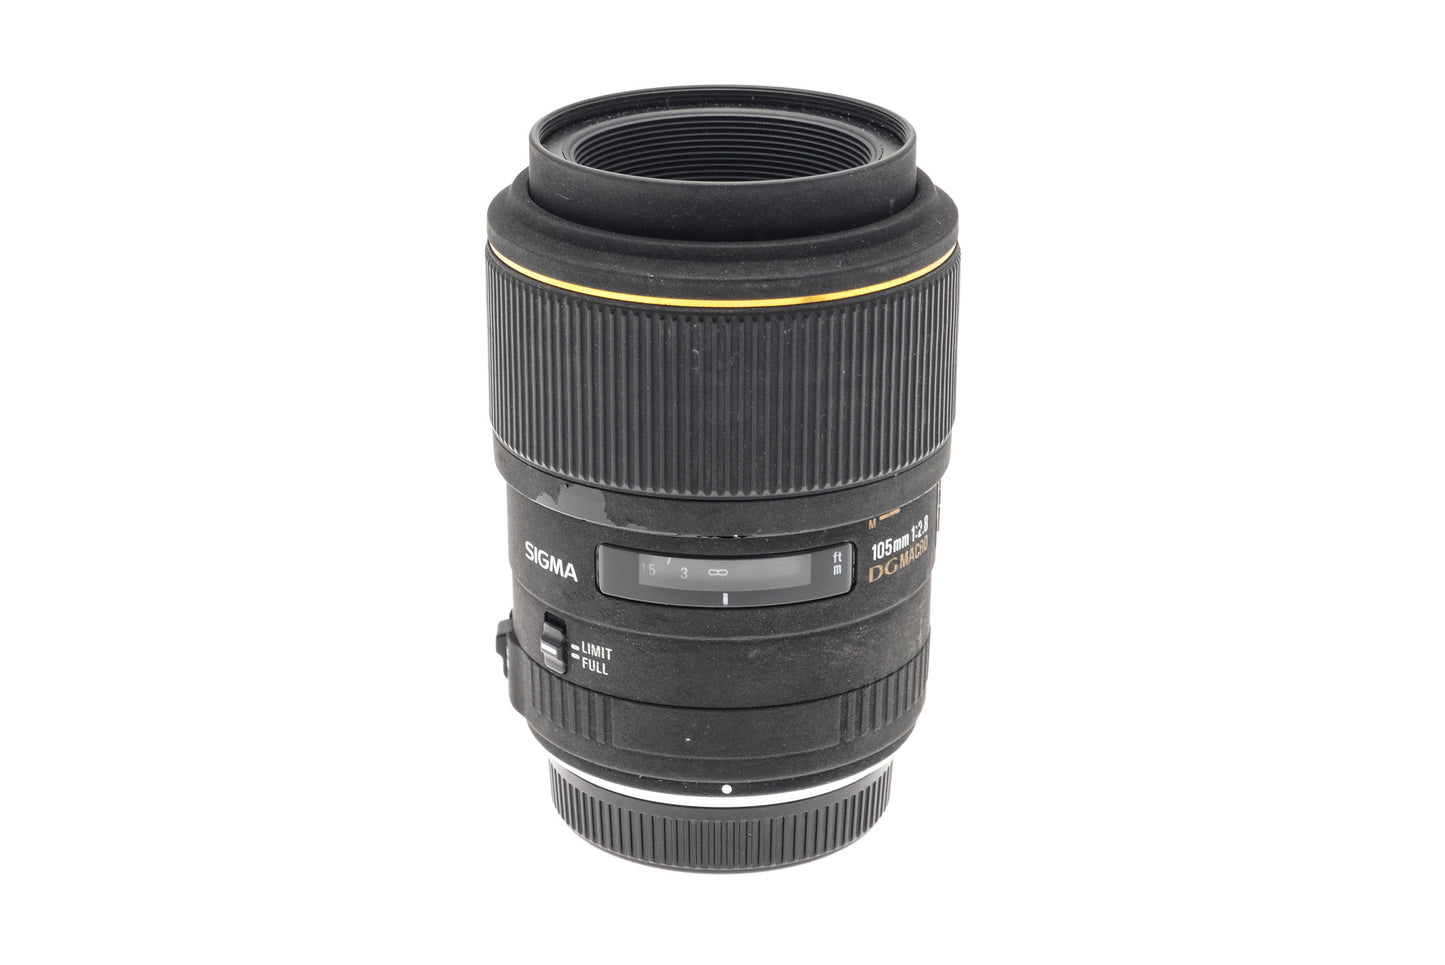 Sigma 105mm f2.8 EX DG Macro - Lens